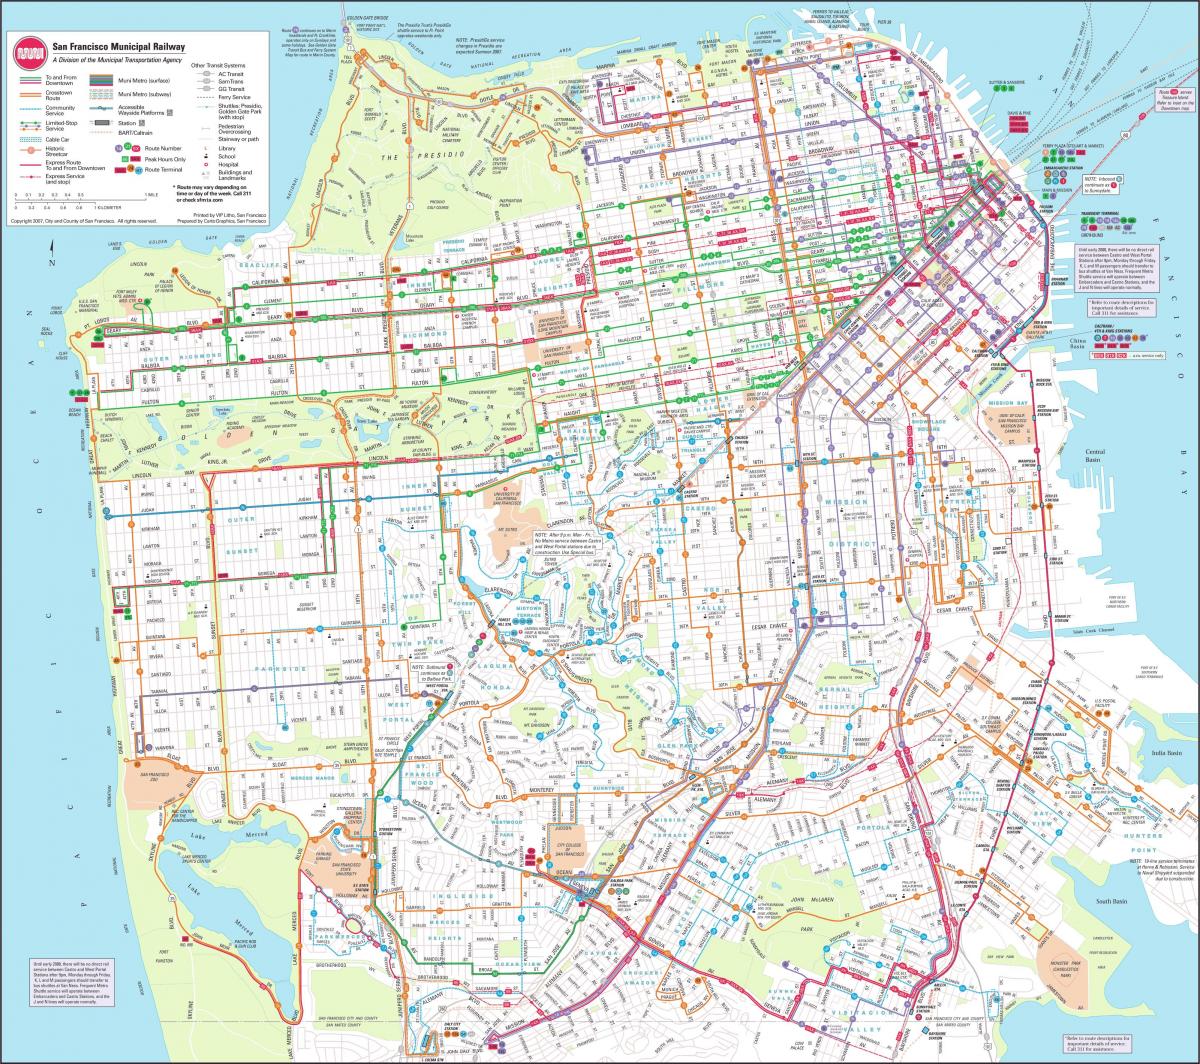 Harta e San Franciskos hekurudhor